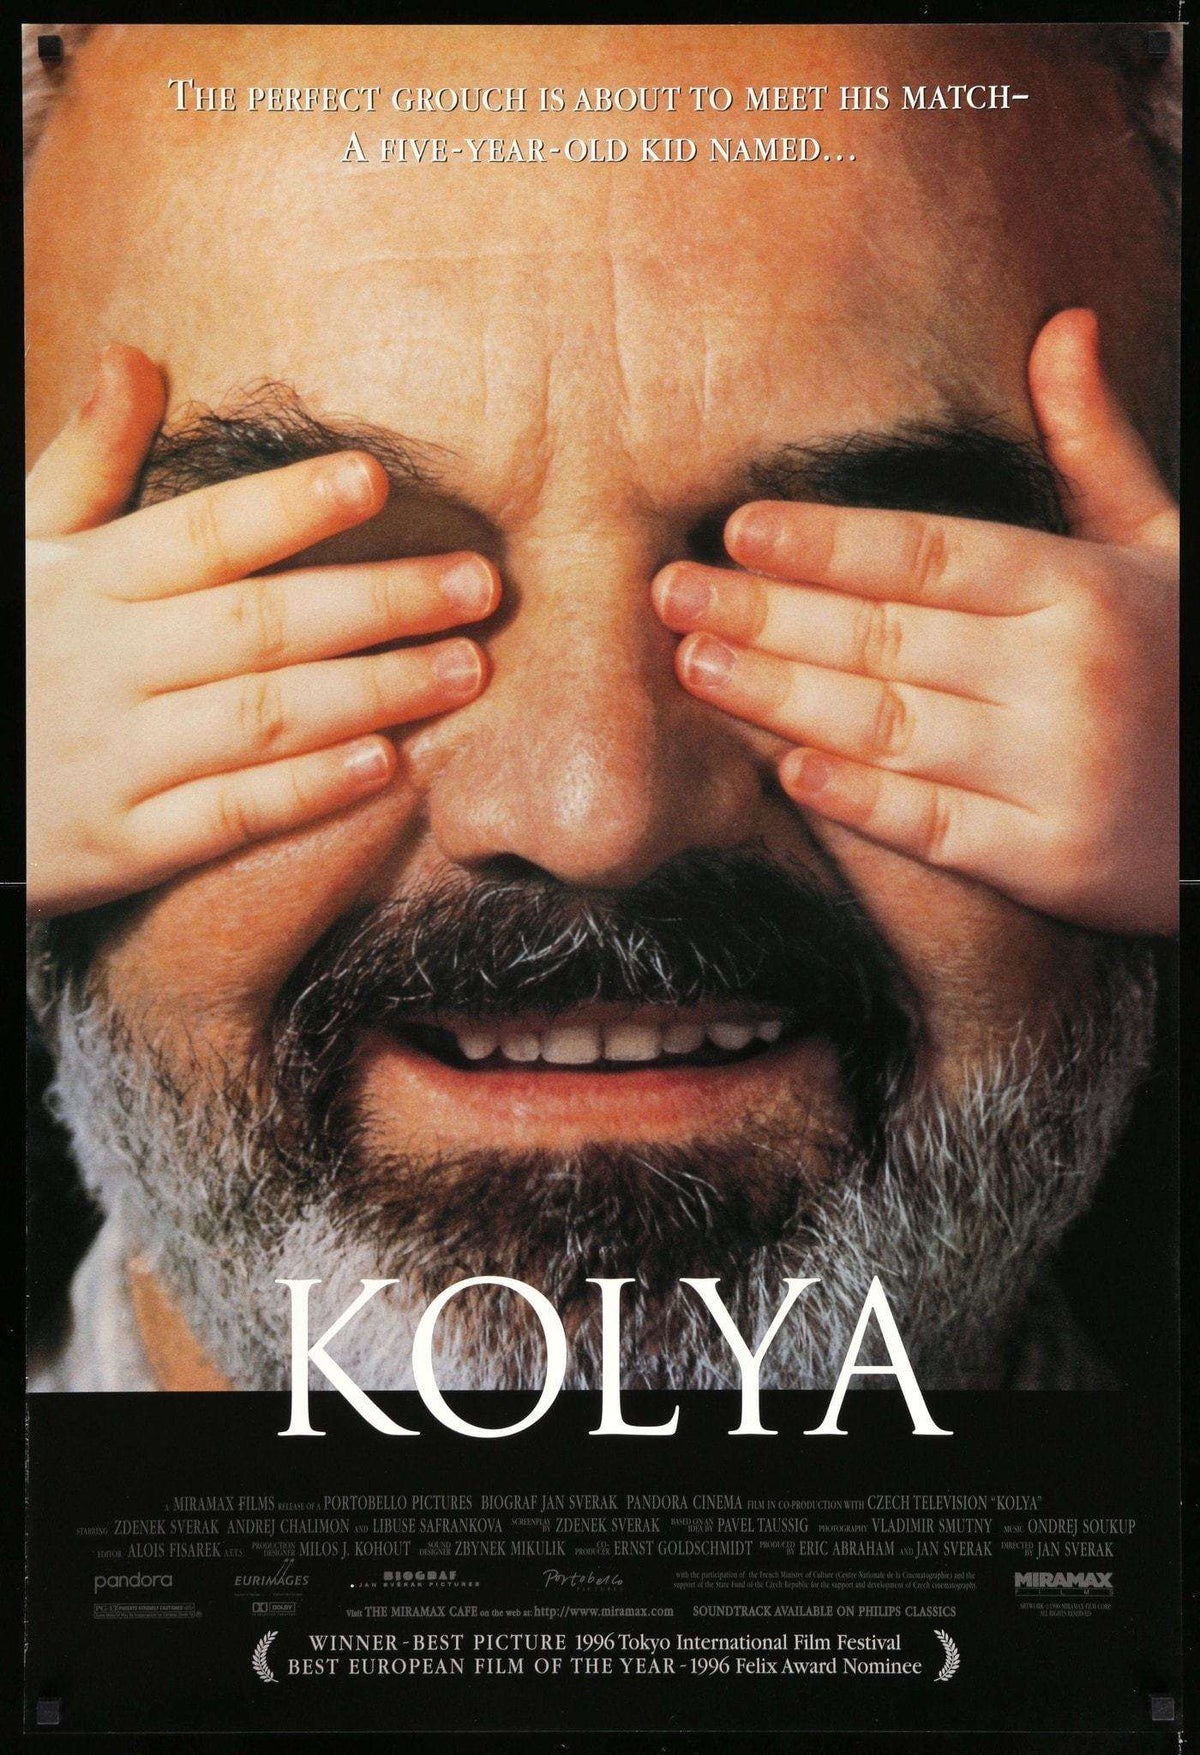 Kolya (1996) original movie poster for sale at Original Film Art